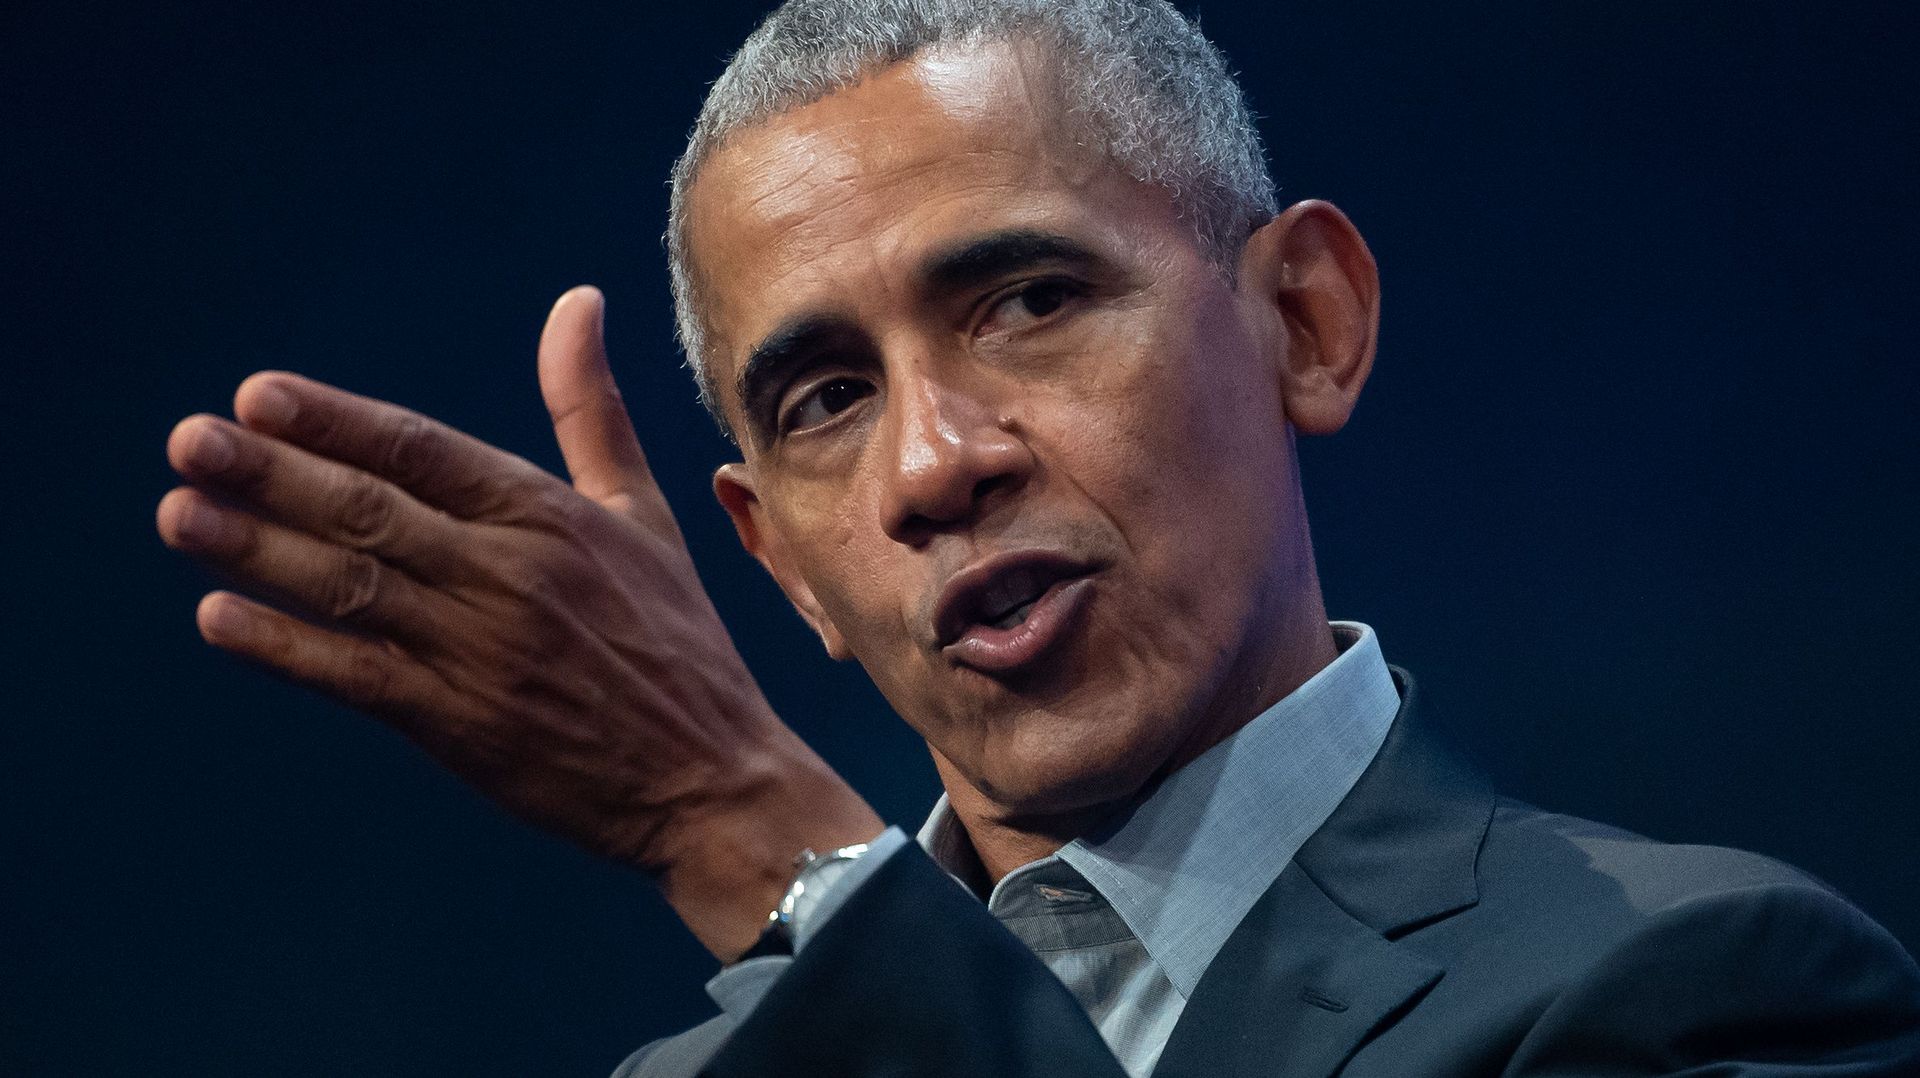 Manifestations aux USA : Obama condamne l’envoi d’agents fédéraux